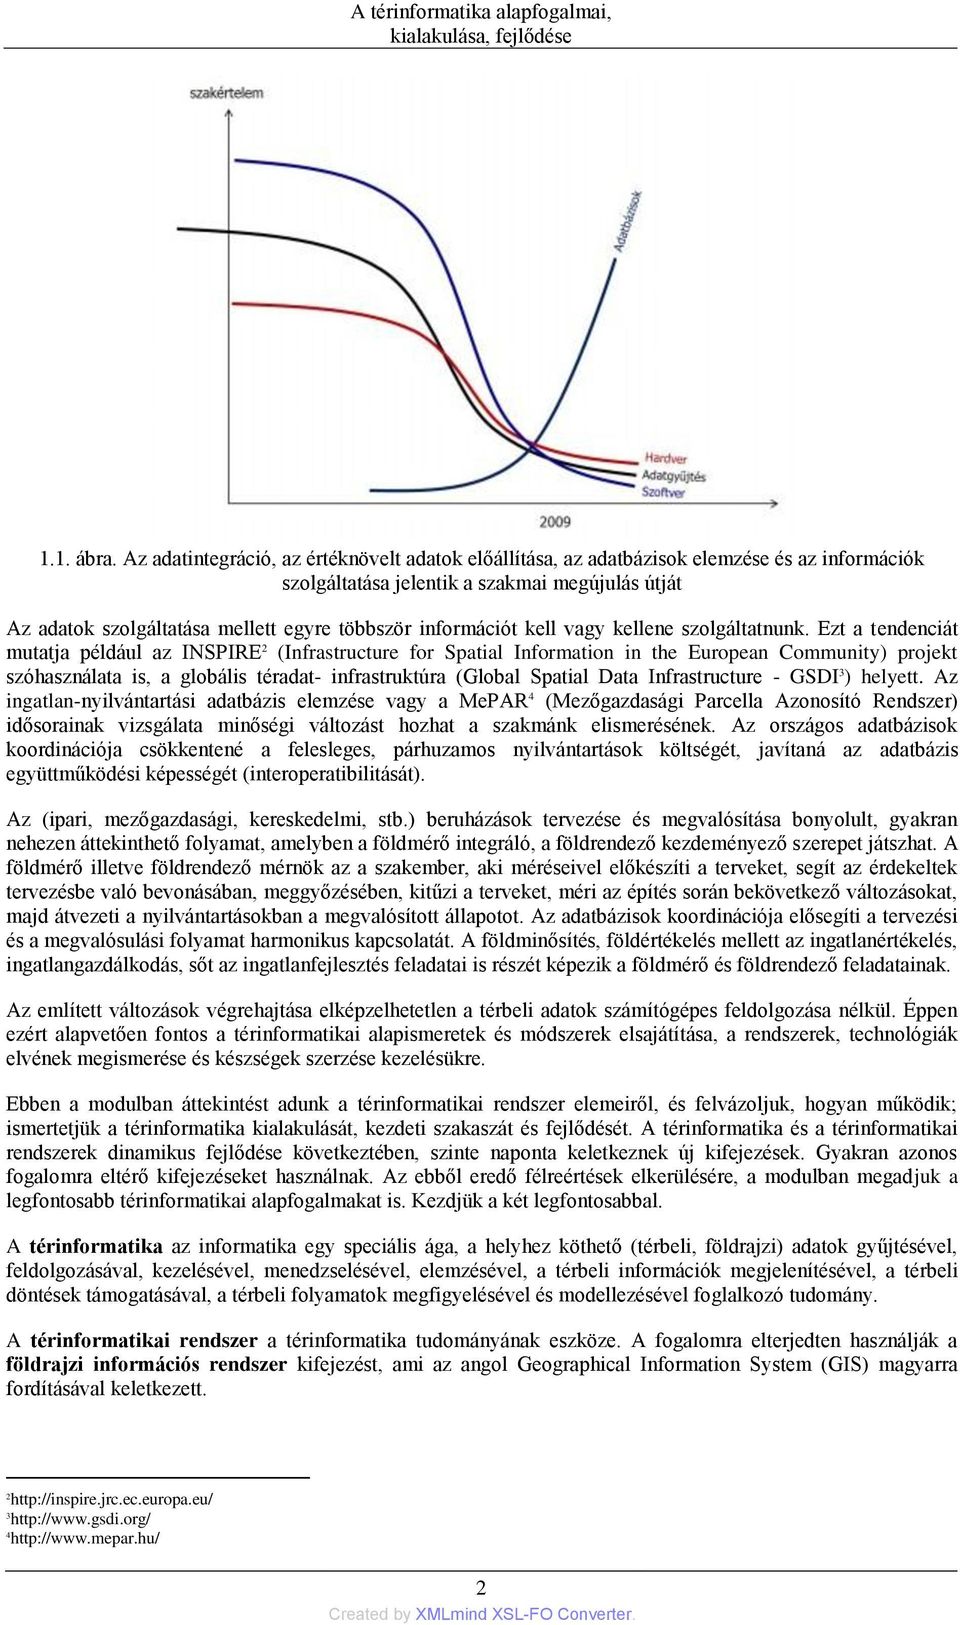 Térinformatika 1. A térinformatika alapfogalmai, kialakulása, fejlődése  Márkus, Béla - PDF Ingyenes letöltés